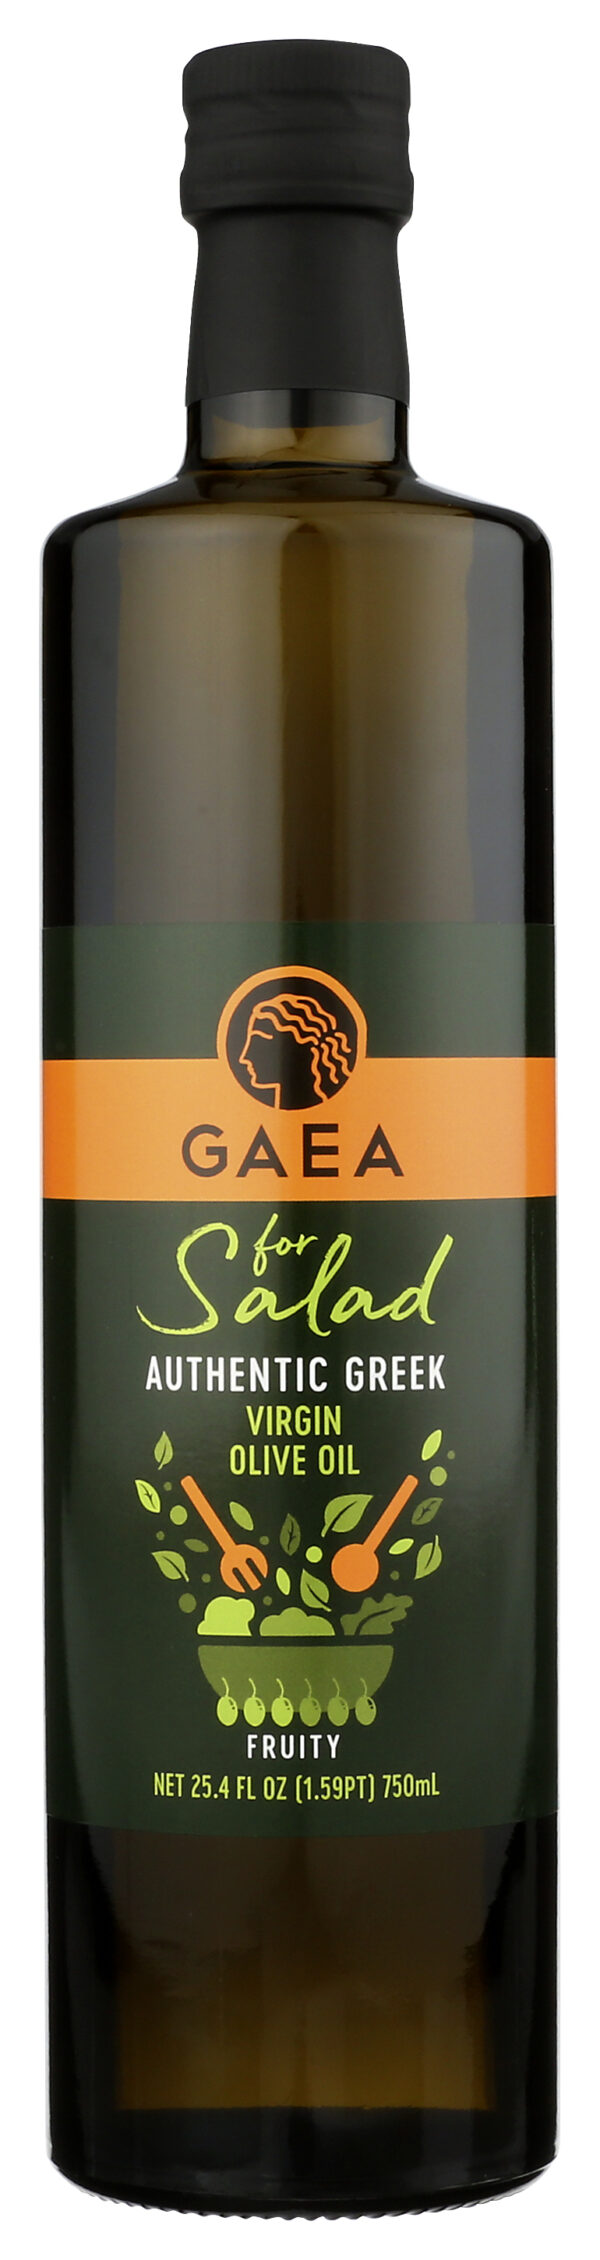 Authentic Greek Virgin Olive Oil for Salad